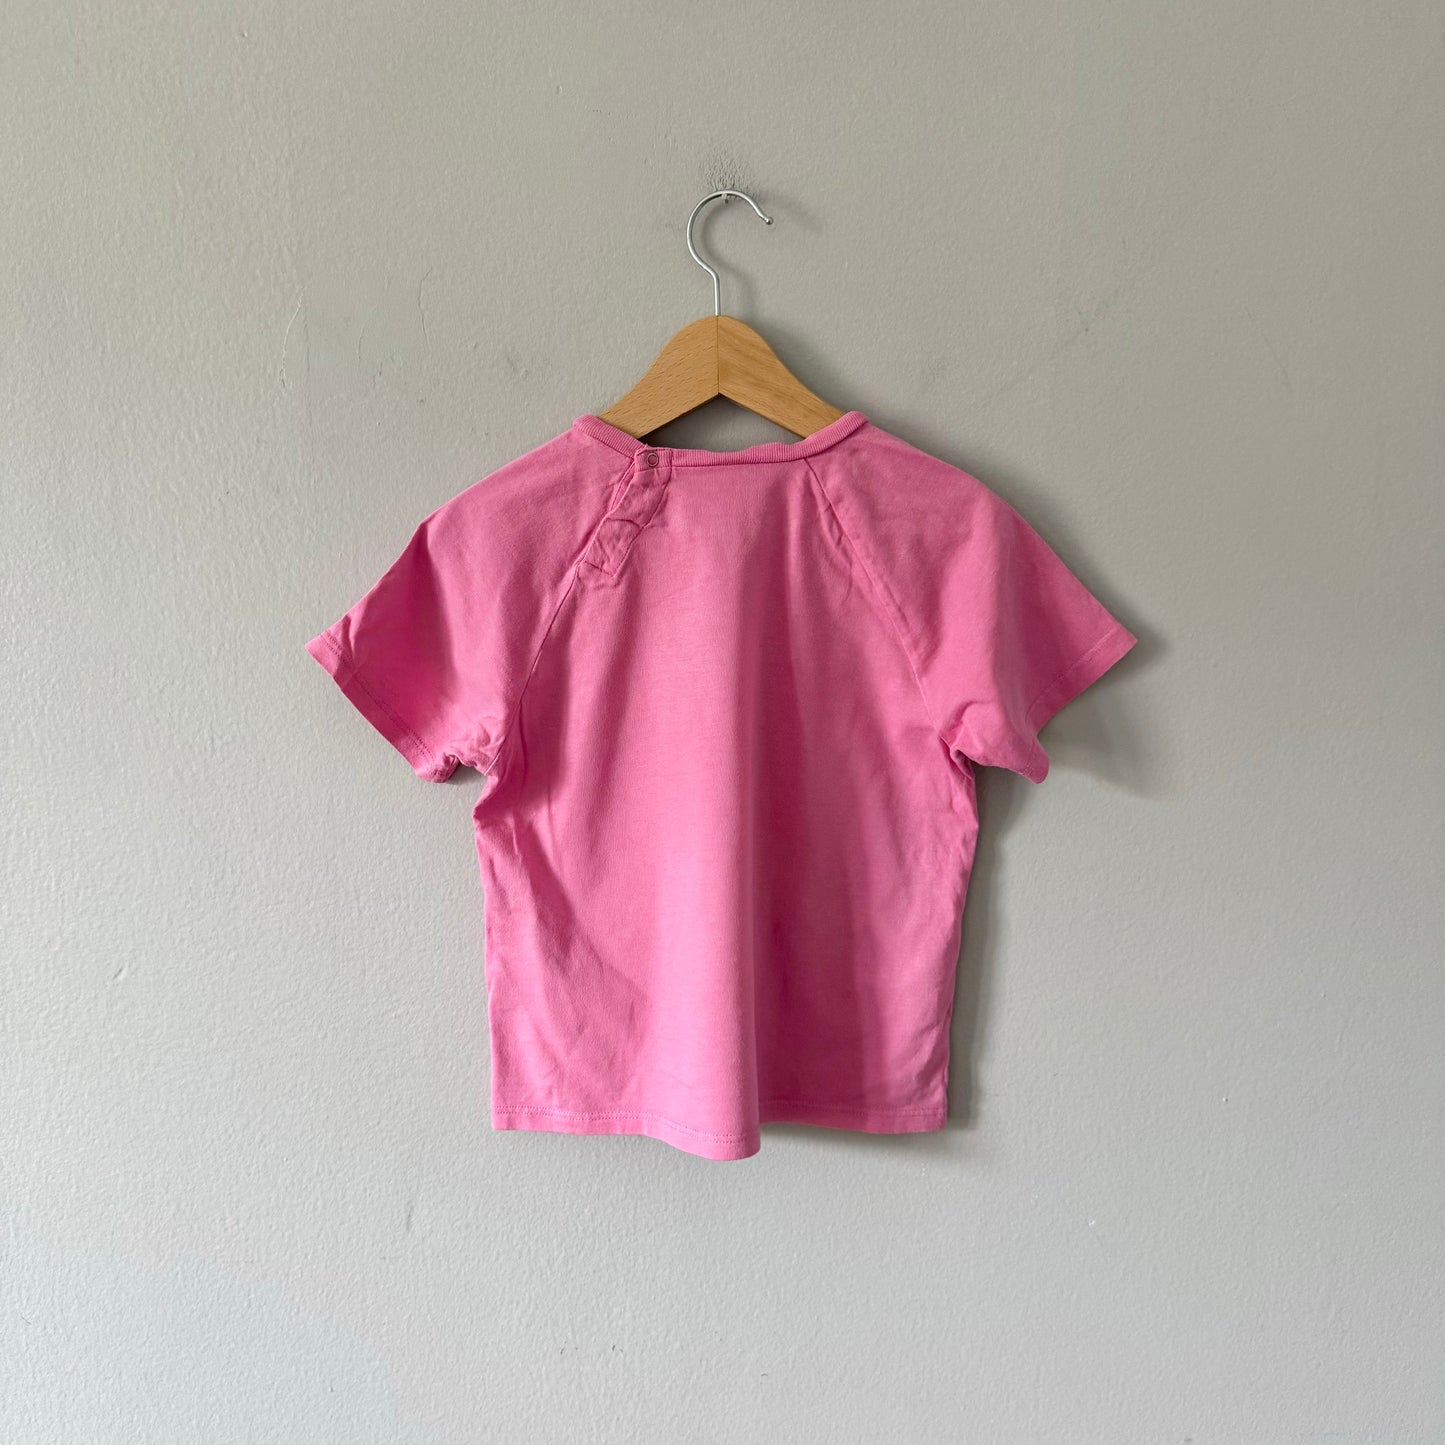 Gucci / Pink cherry T-shirt / 2T